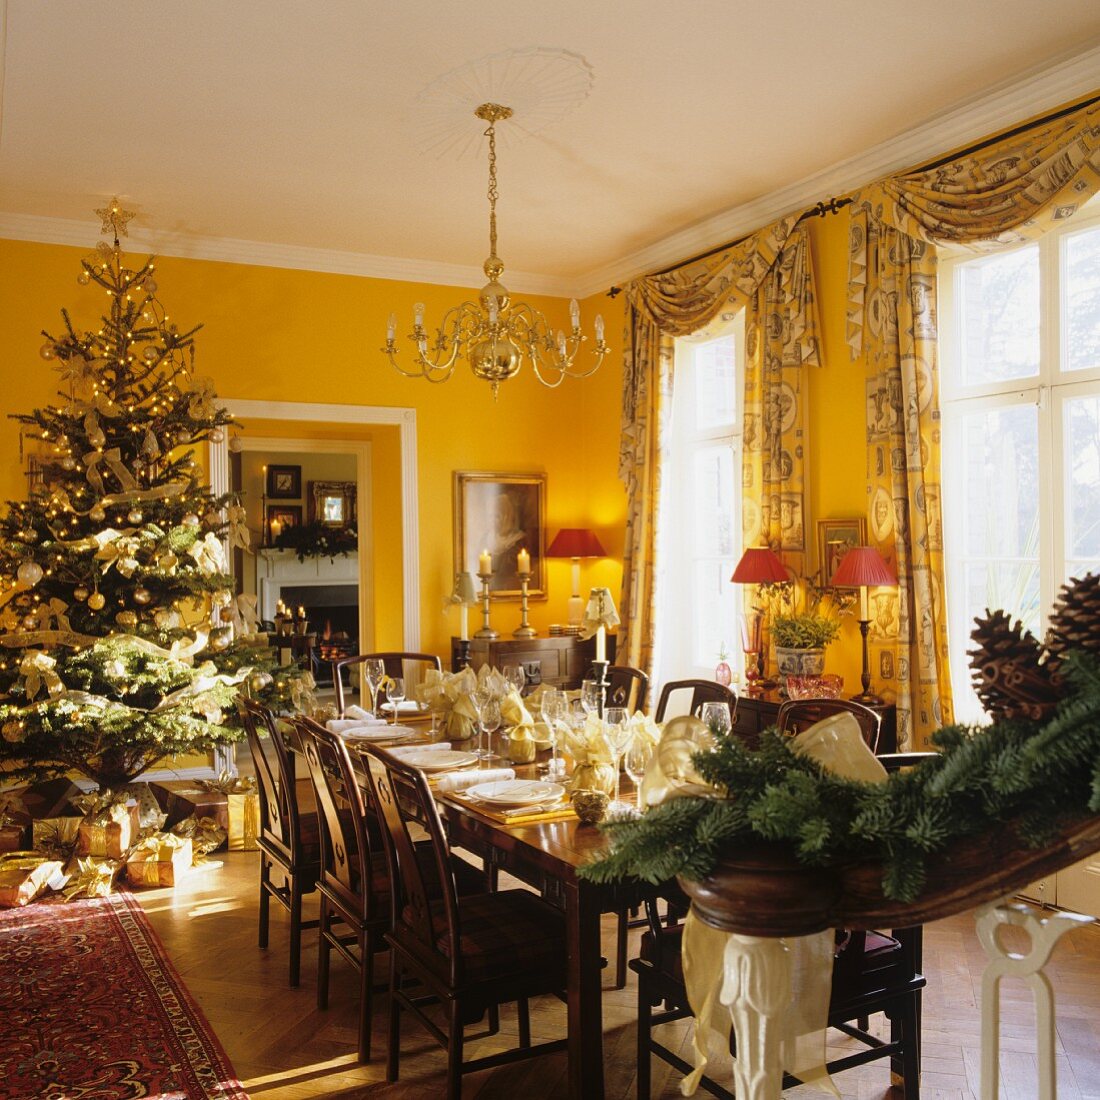 Festlich gedeckte Tafel und Weihnachtsbaum im gelb getönten Esszimmer